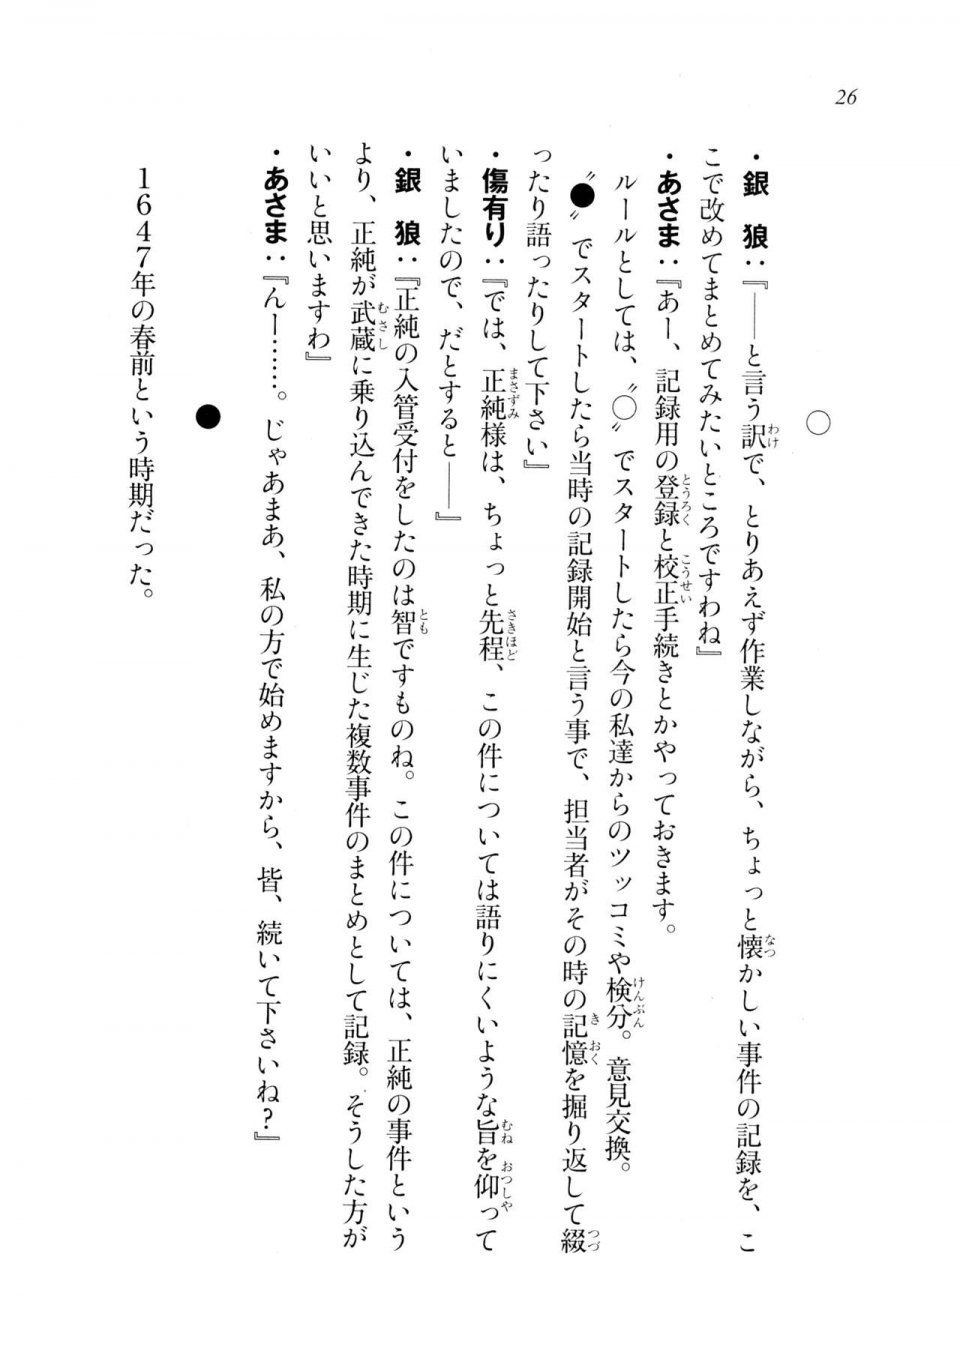 Kyoukai Senjou no Horizon LN Sidestory Vol 2 - Photo #24